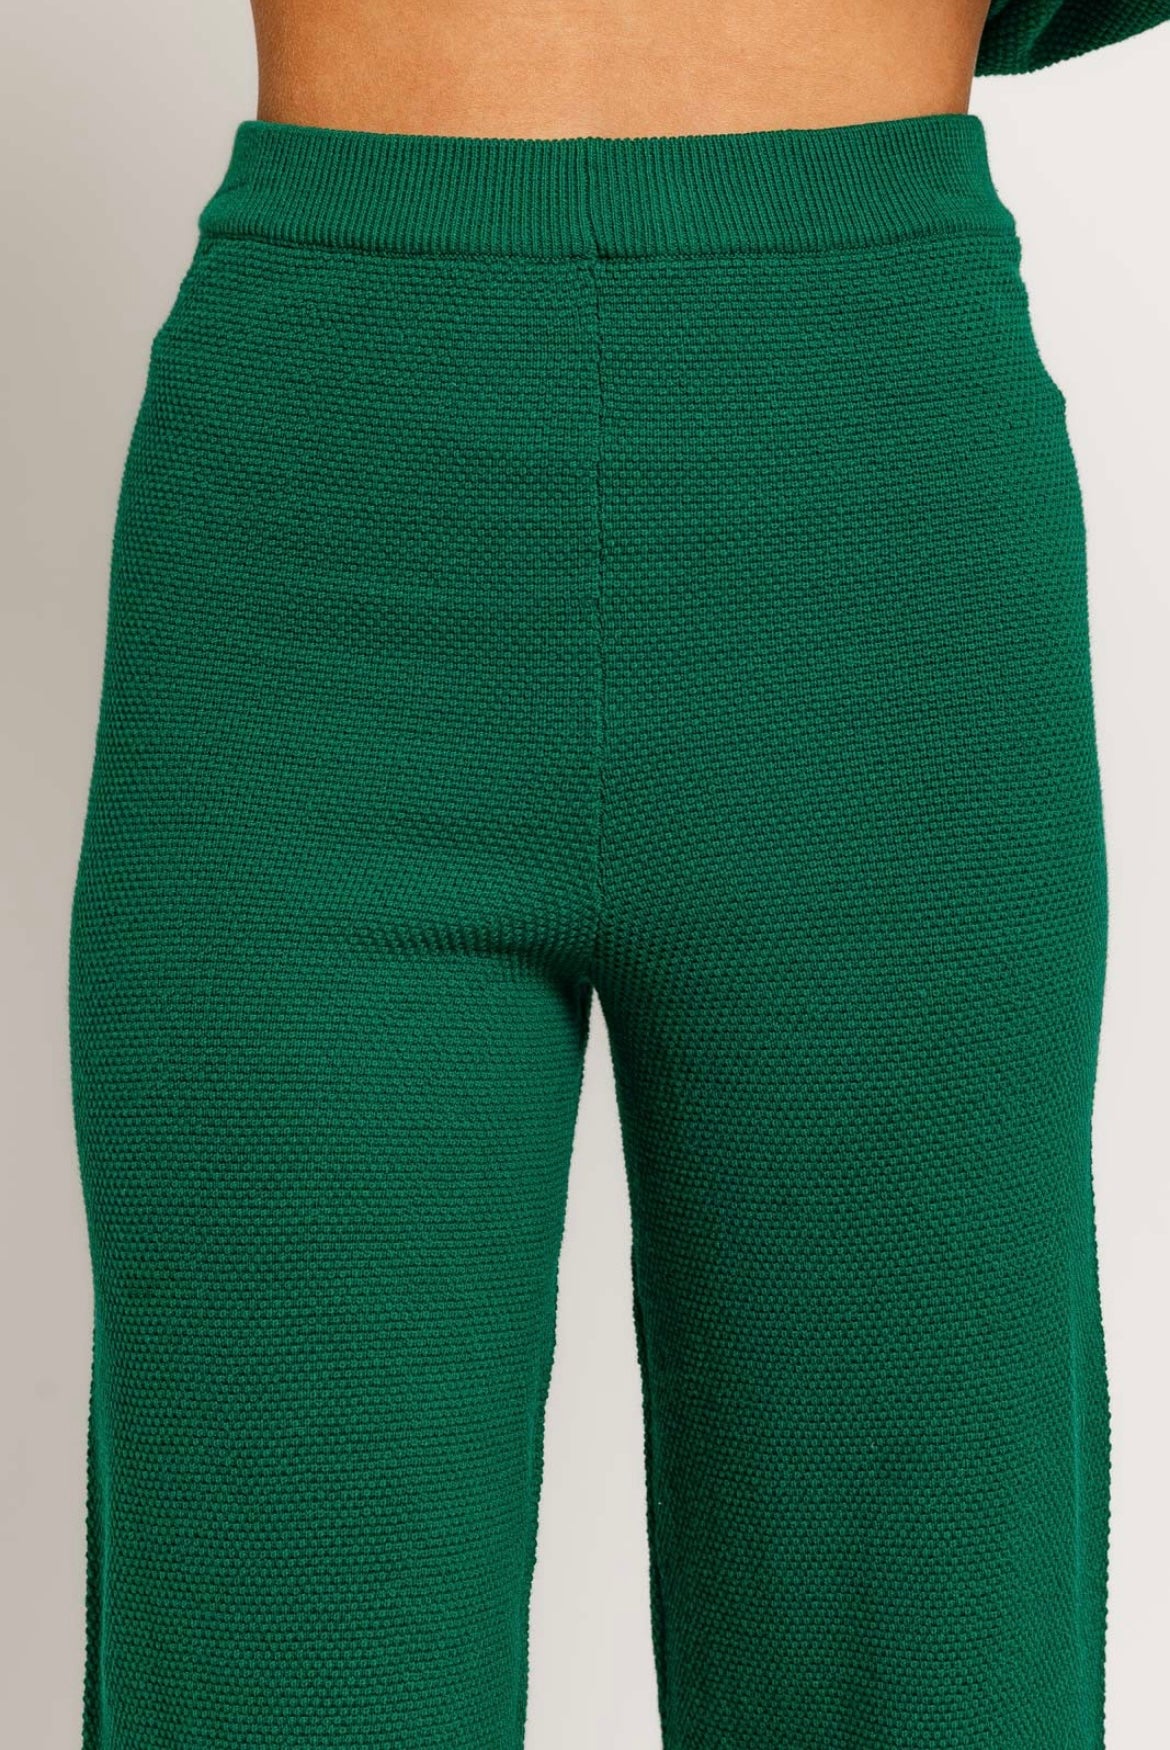 Green knit pants